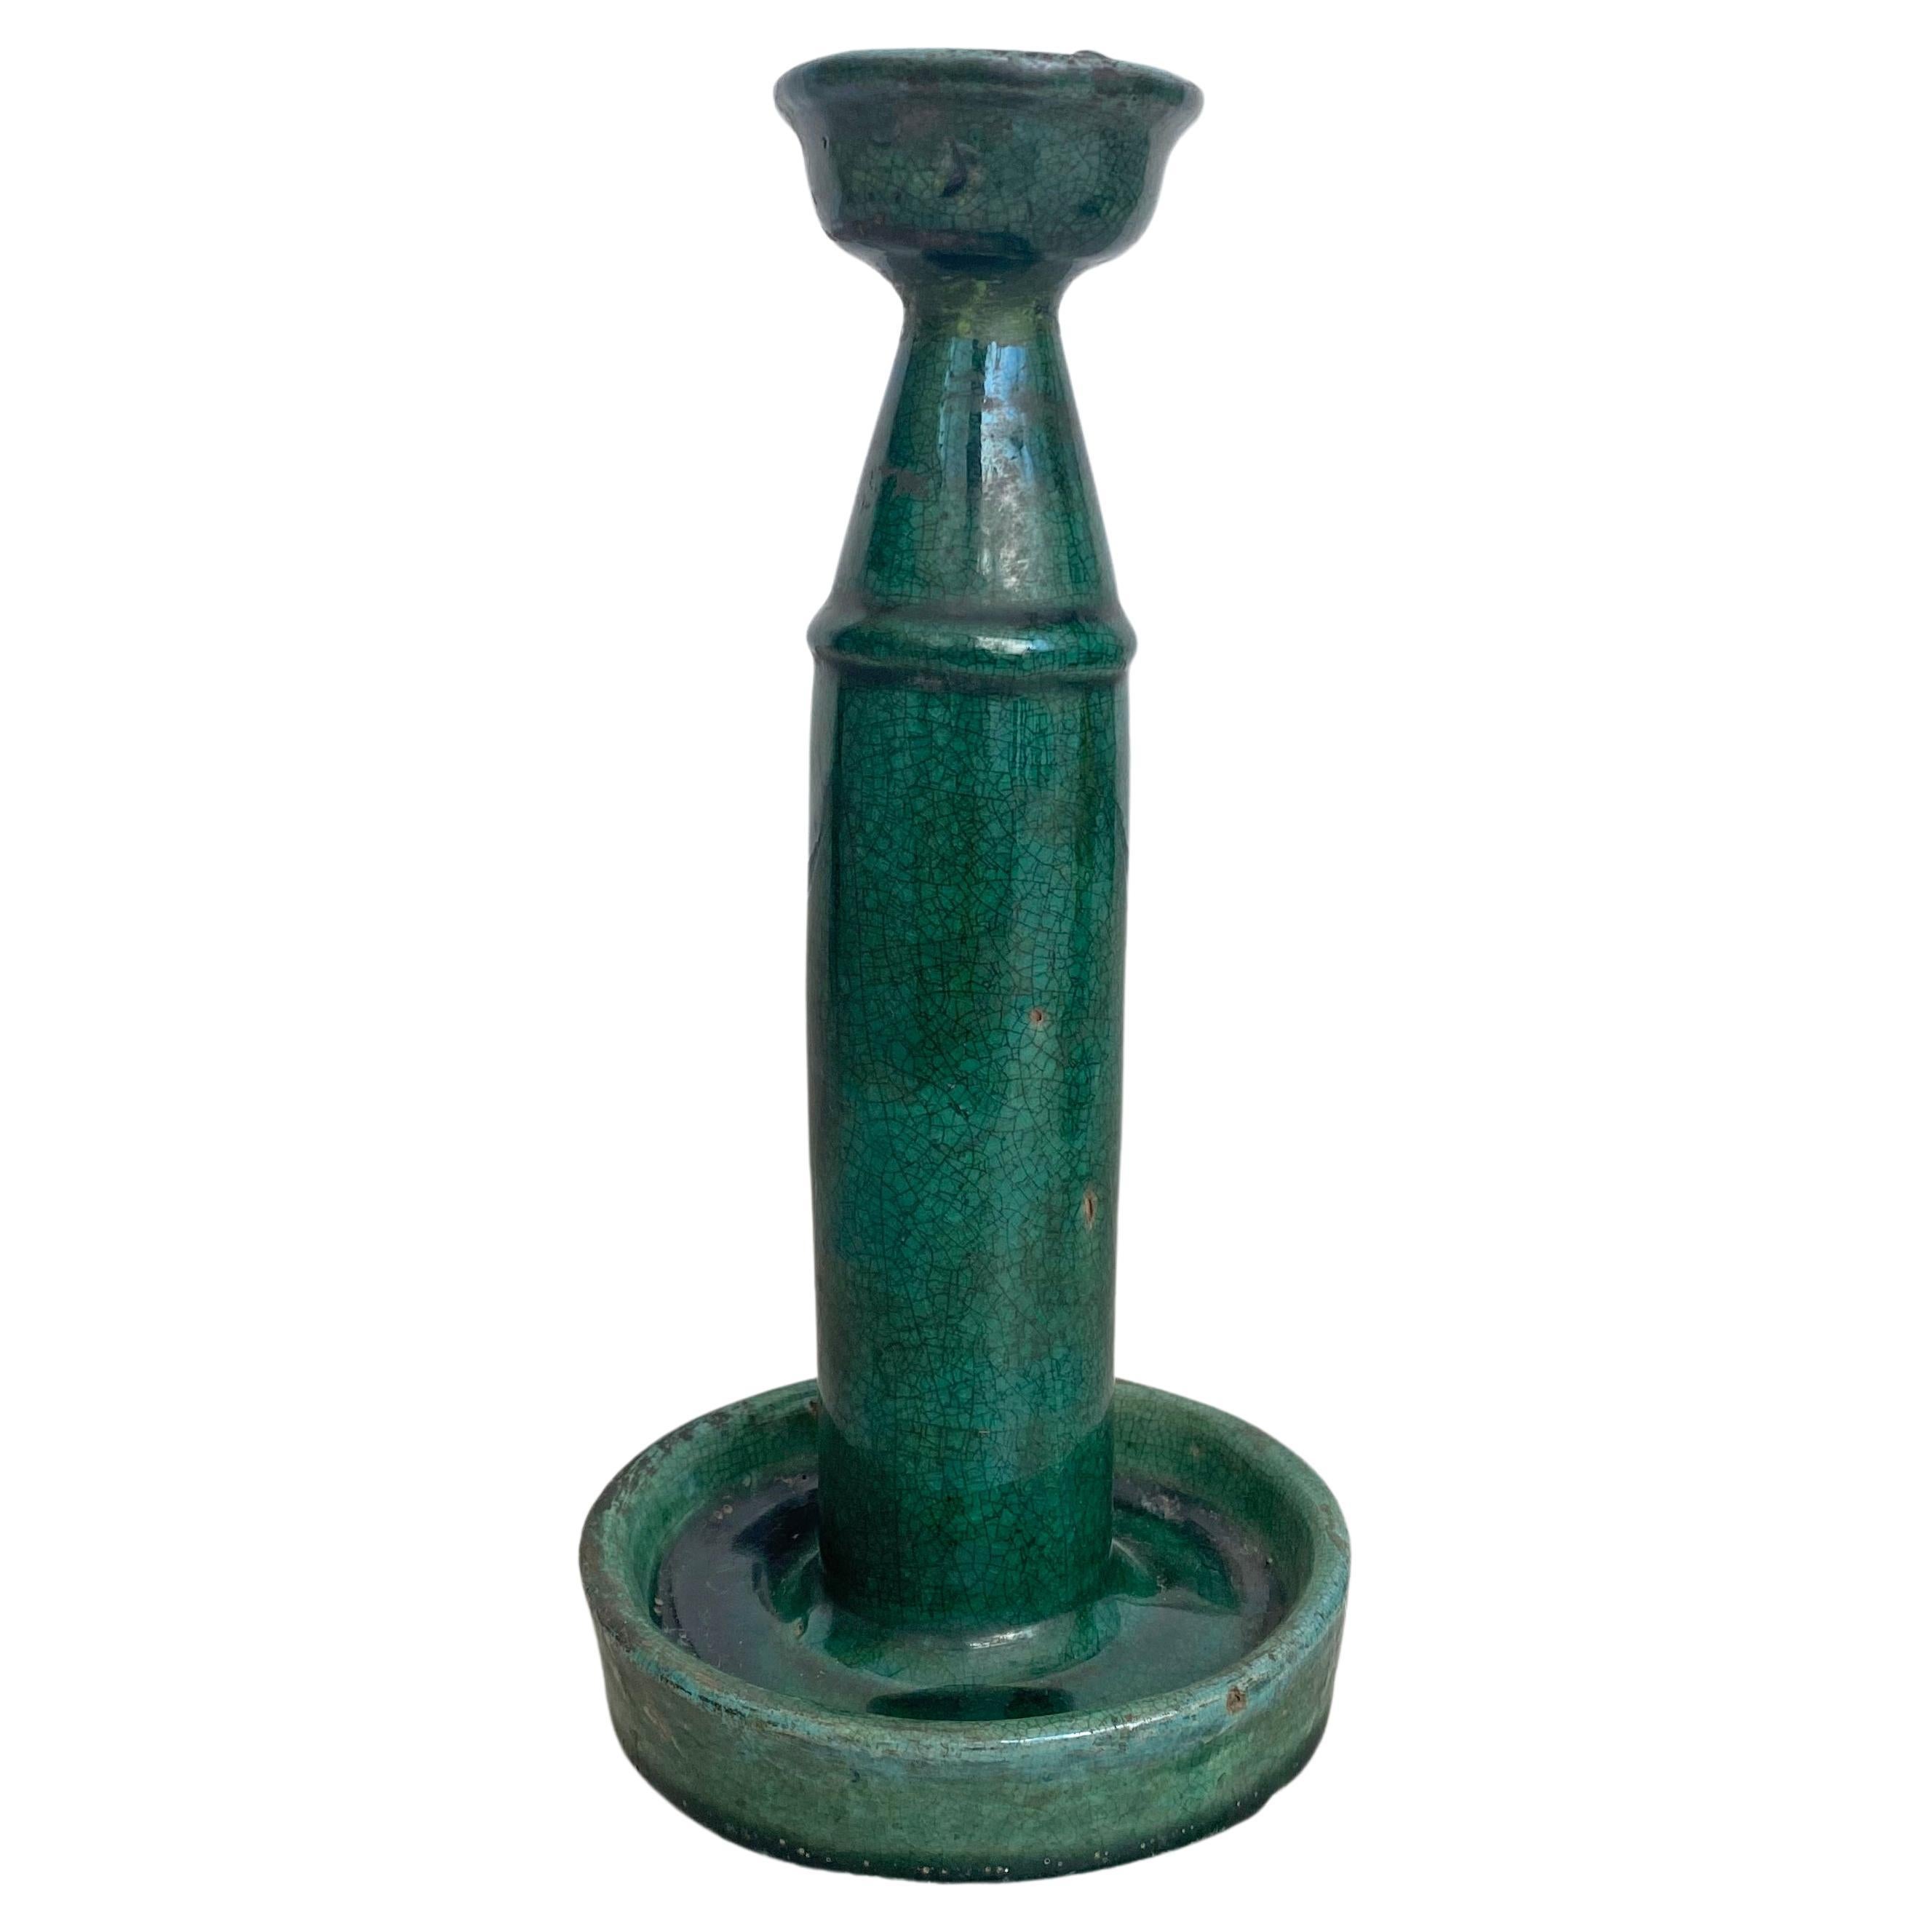 Chinesische Keramik 'Shiwan' Öllampe / Kerzenhalter, grüne Glasur, um 1900